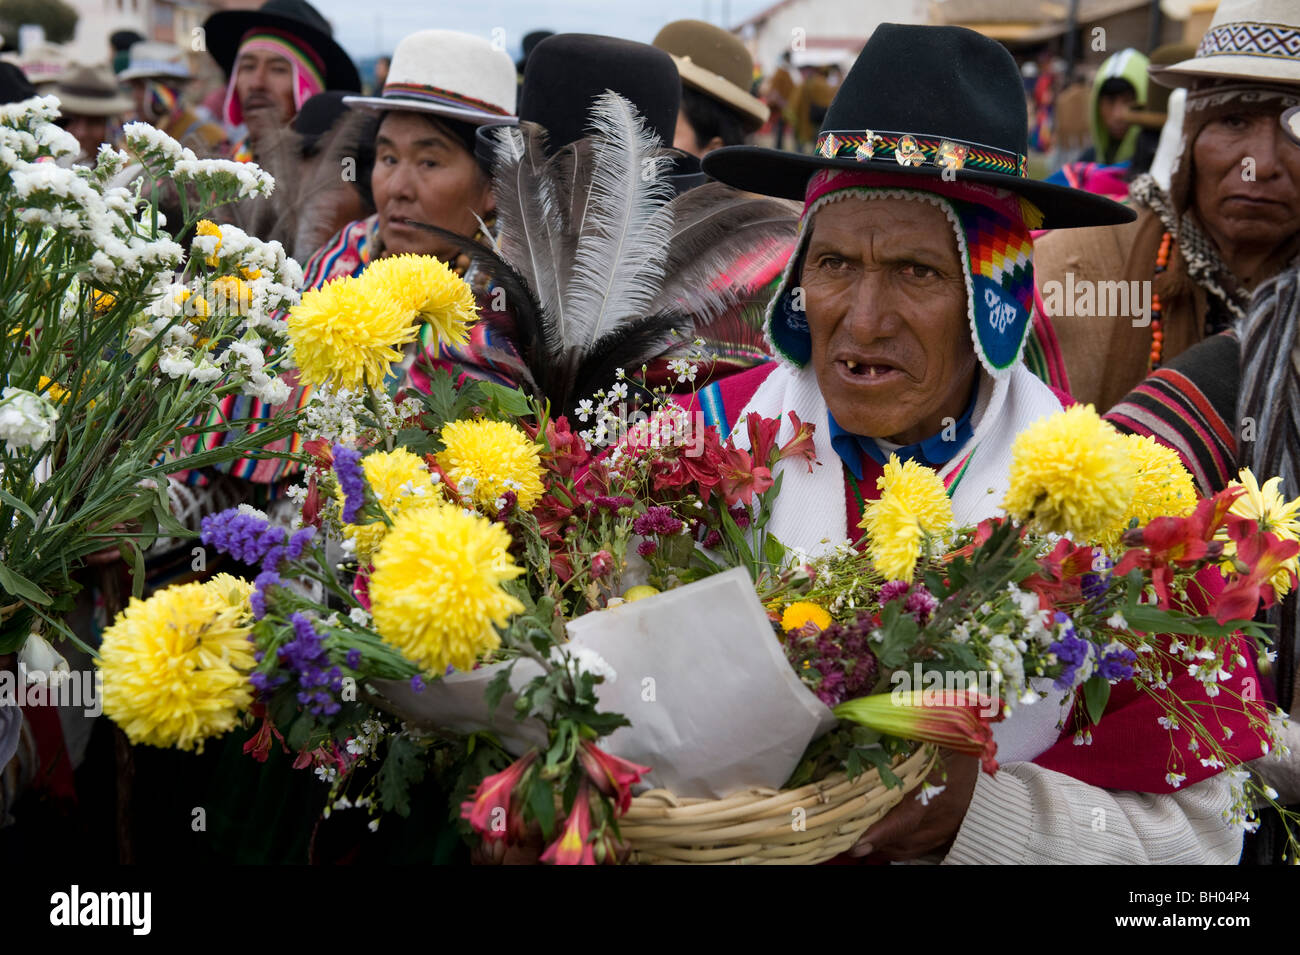 Un homme avec des costumes traditionnels de l'aymara, cérémonie du président Evo Morales en Bolivie, l'hypothèse de Tiwanaku. Banque D'Images